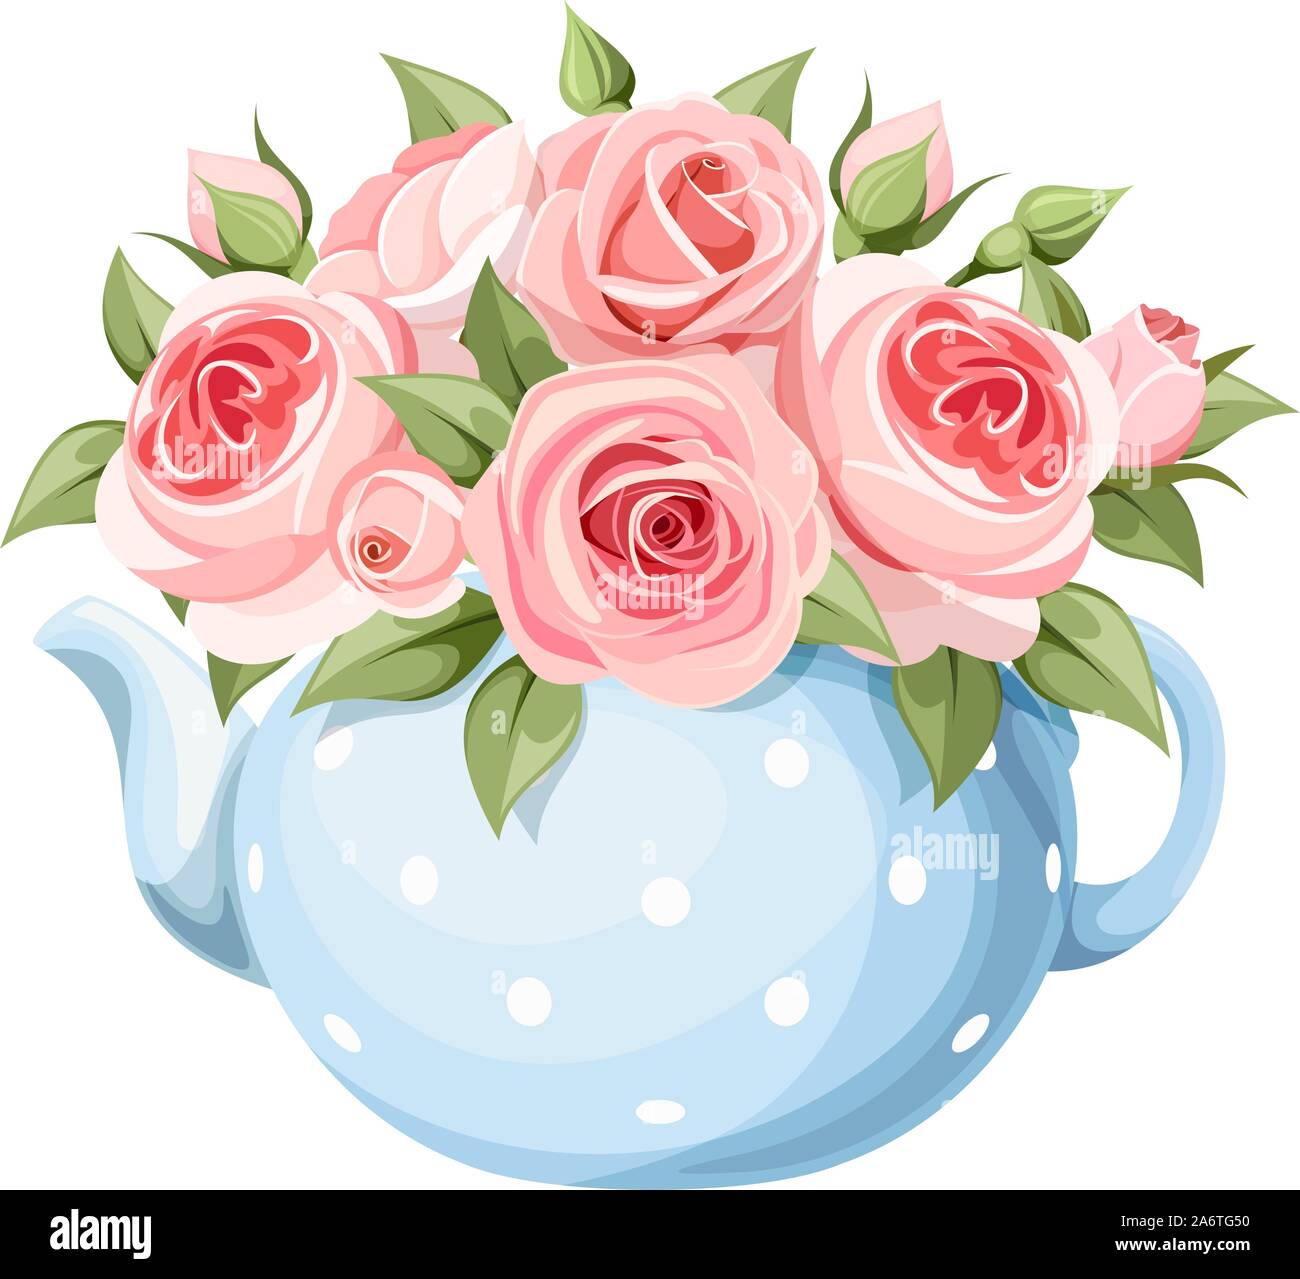 Vektor Bouquet von rosa Englische Rosen in einem Blau Teekanne auf einem weißen Hintergrund. Stock Vektor